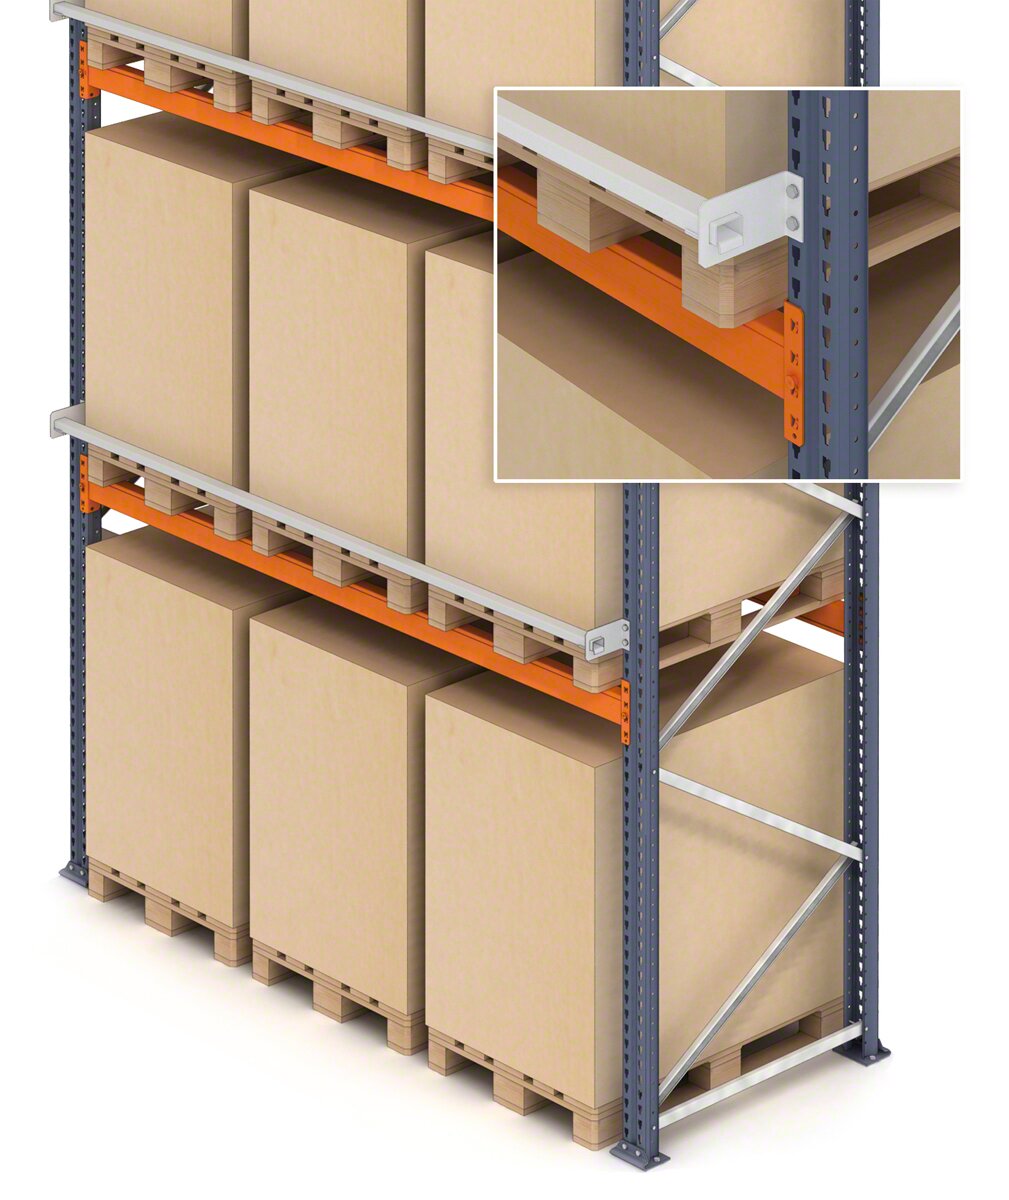 Es posible añadir un perfil de seguridad para la mercancía depositada en las estanterías de tarimas